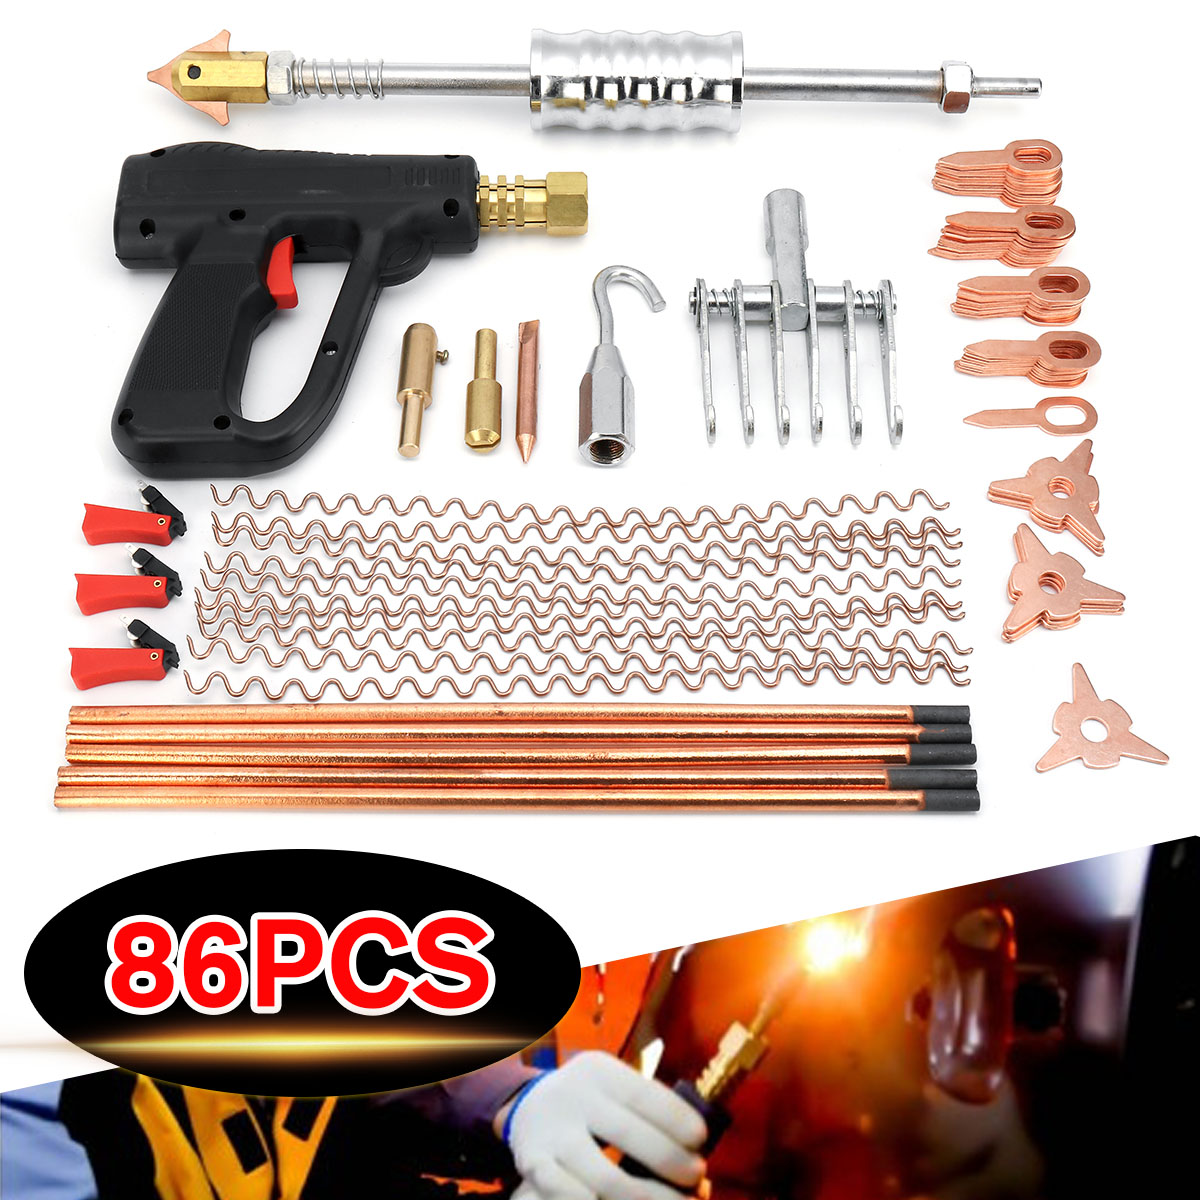 86Pcs-Dent-Puller-Kit-Car-Body-Dent-Spot-Repair-Device-Welder-Stud-Weld-Welding-Tools-Kit-1419058-2